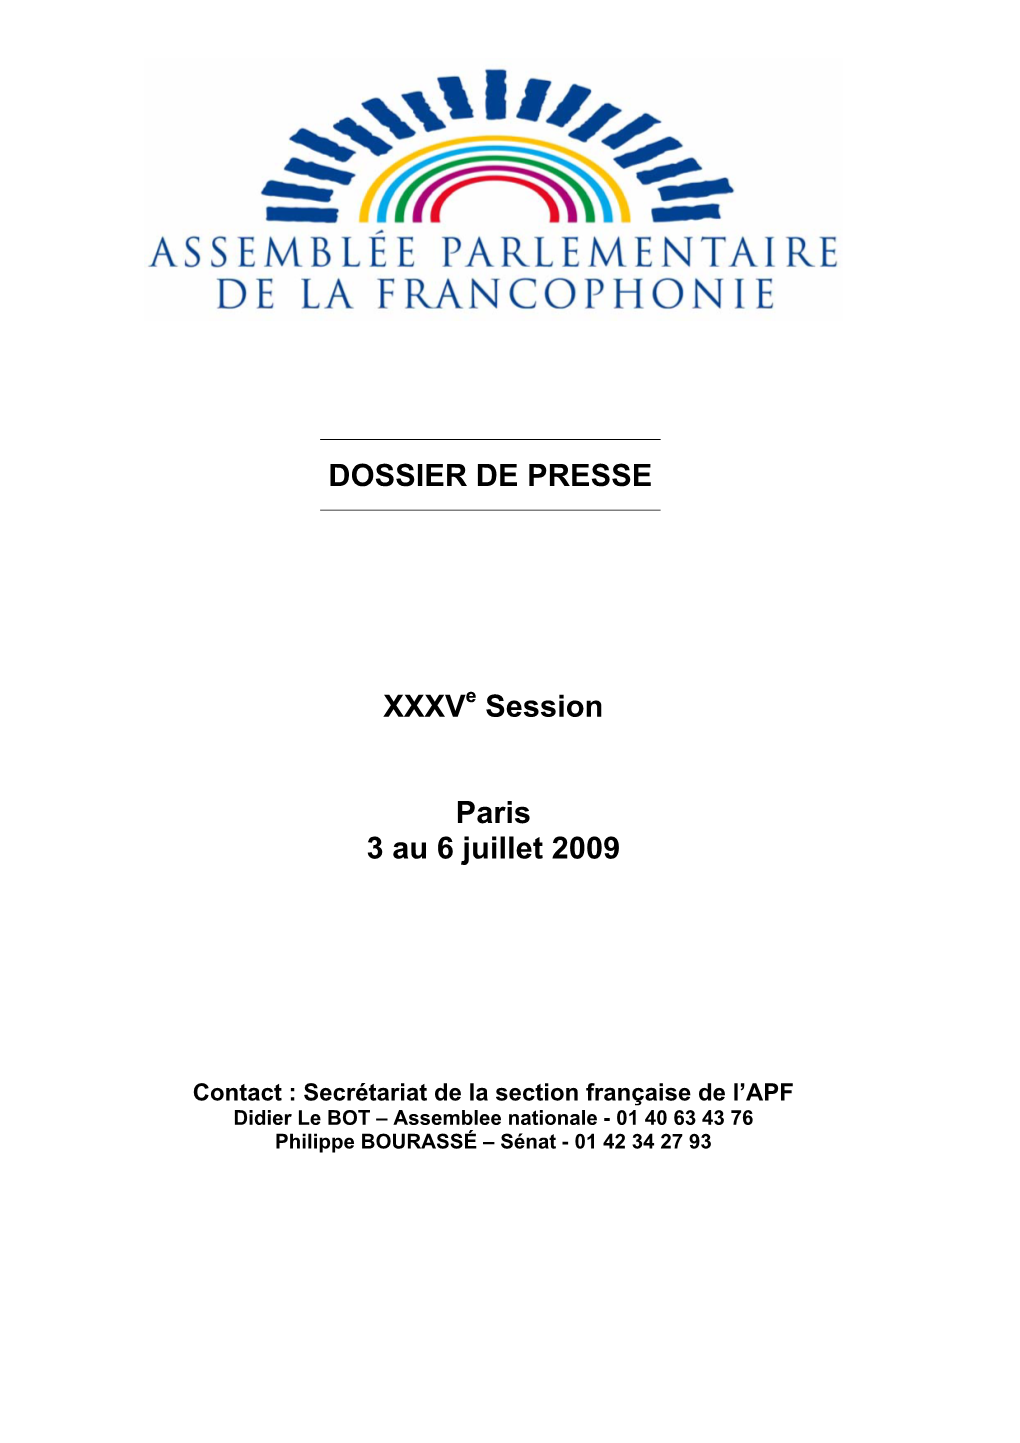 DOSSIER DE PRESSE Xxxve Session Paris 3 Au 6 Juillet 2009